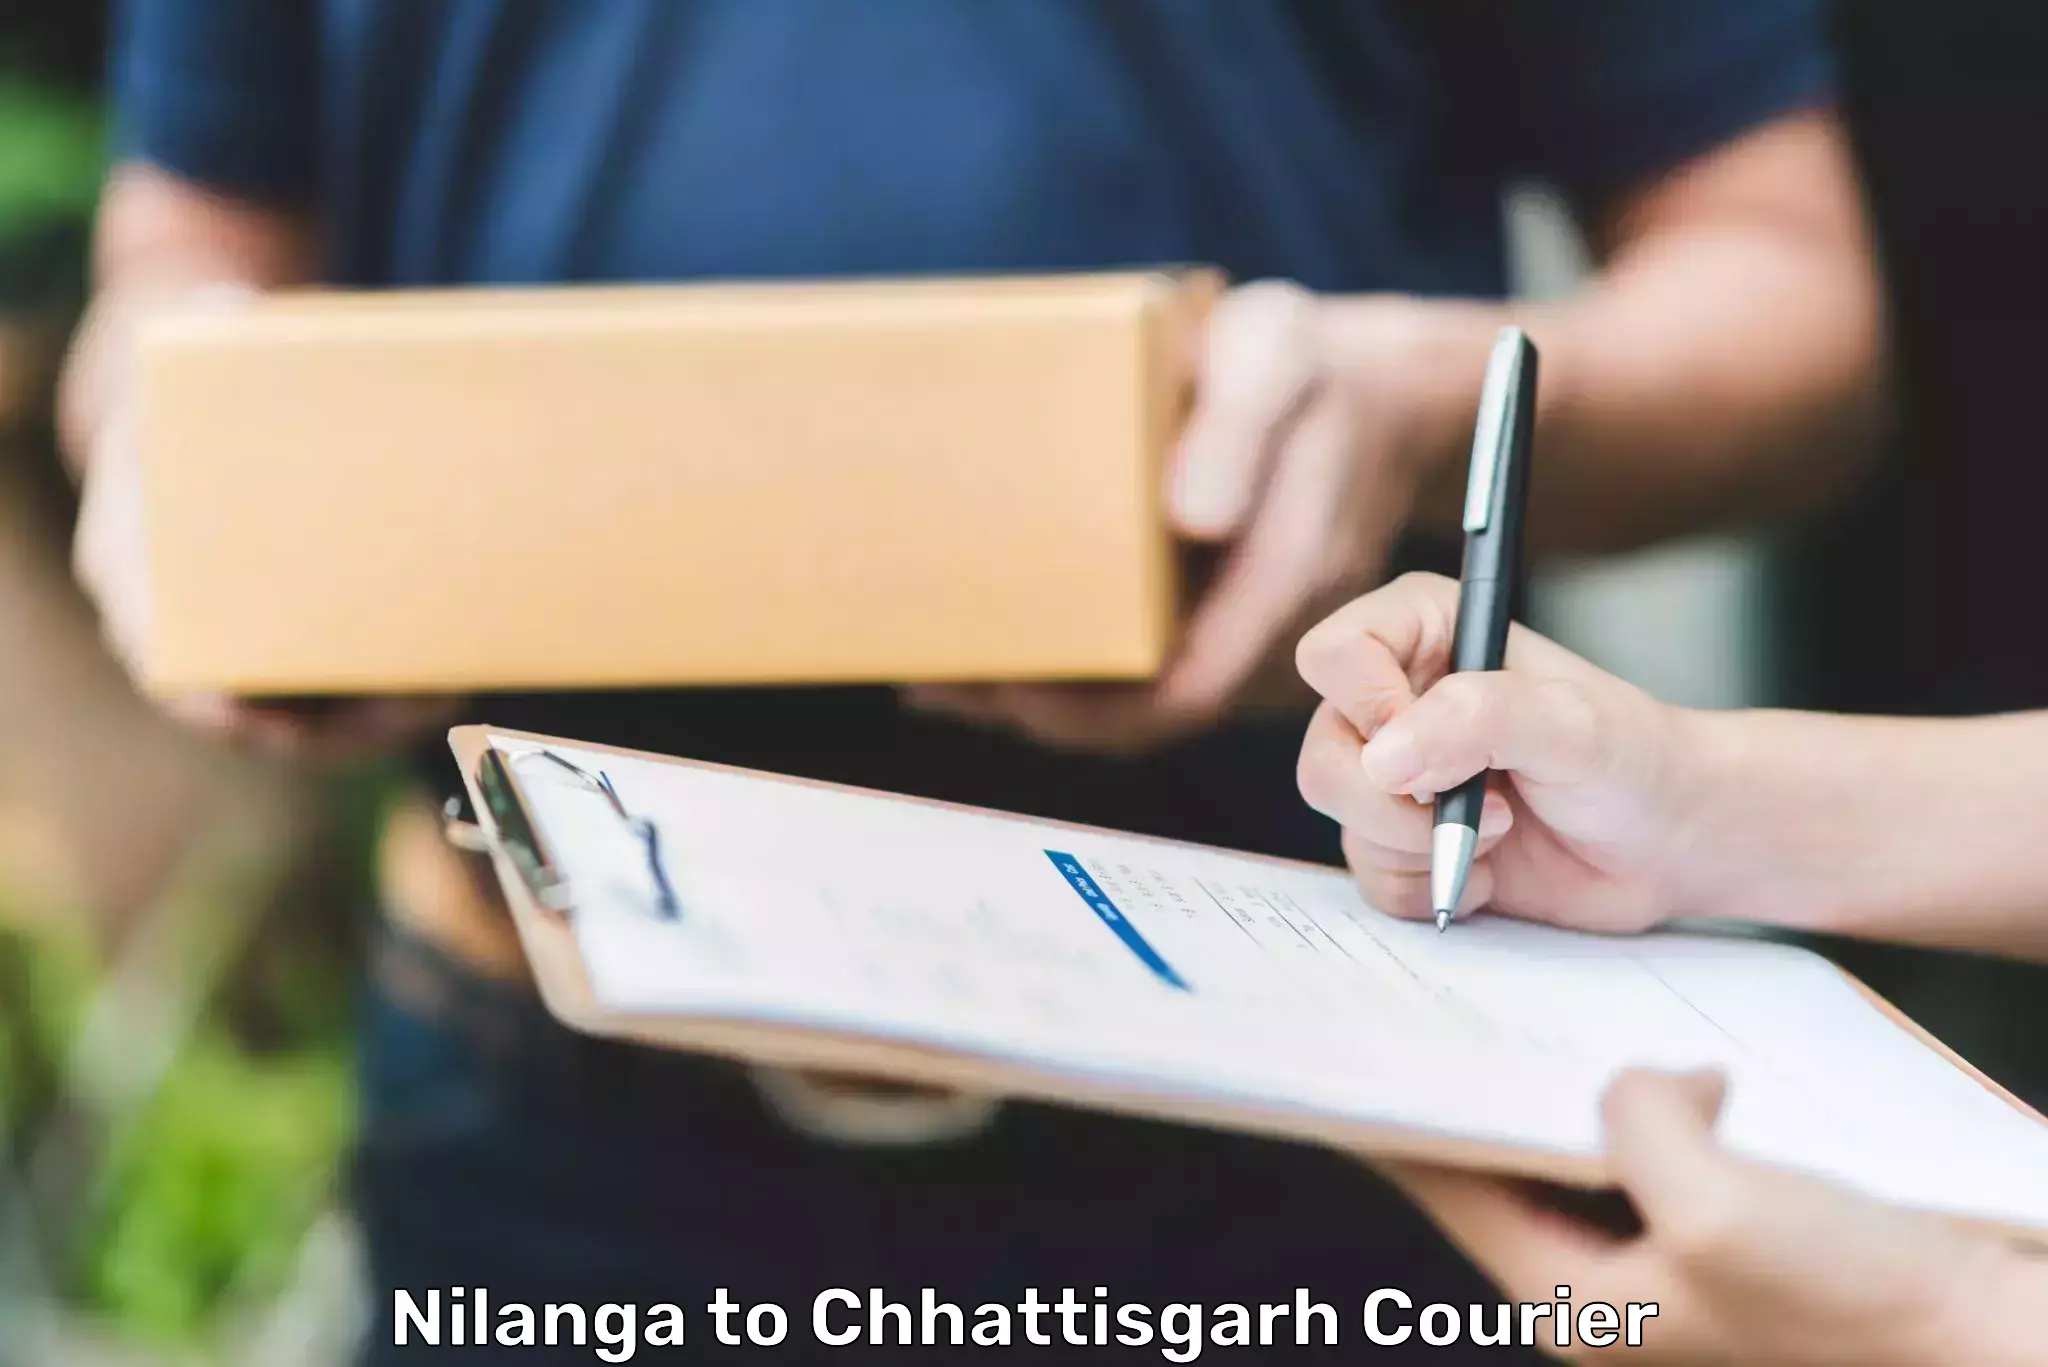 Professional courier handling Nilanga to Balrampur Ramanujganj